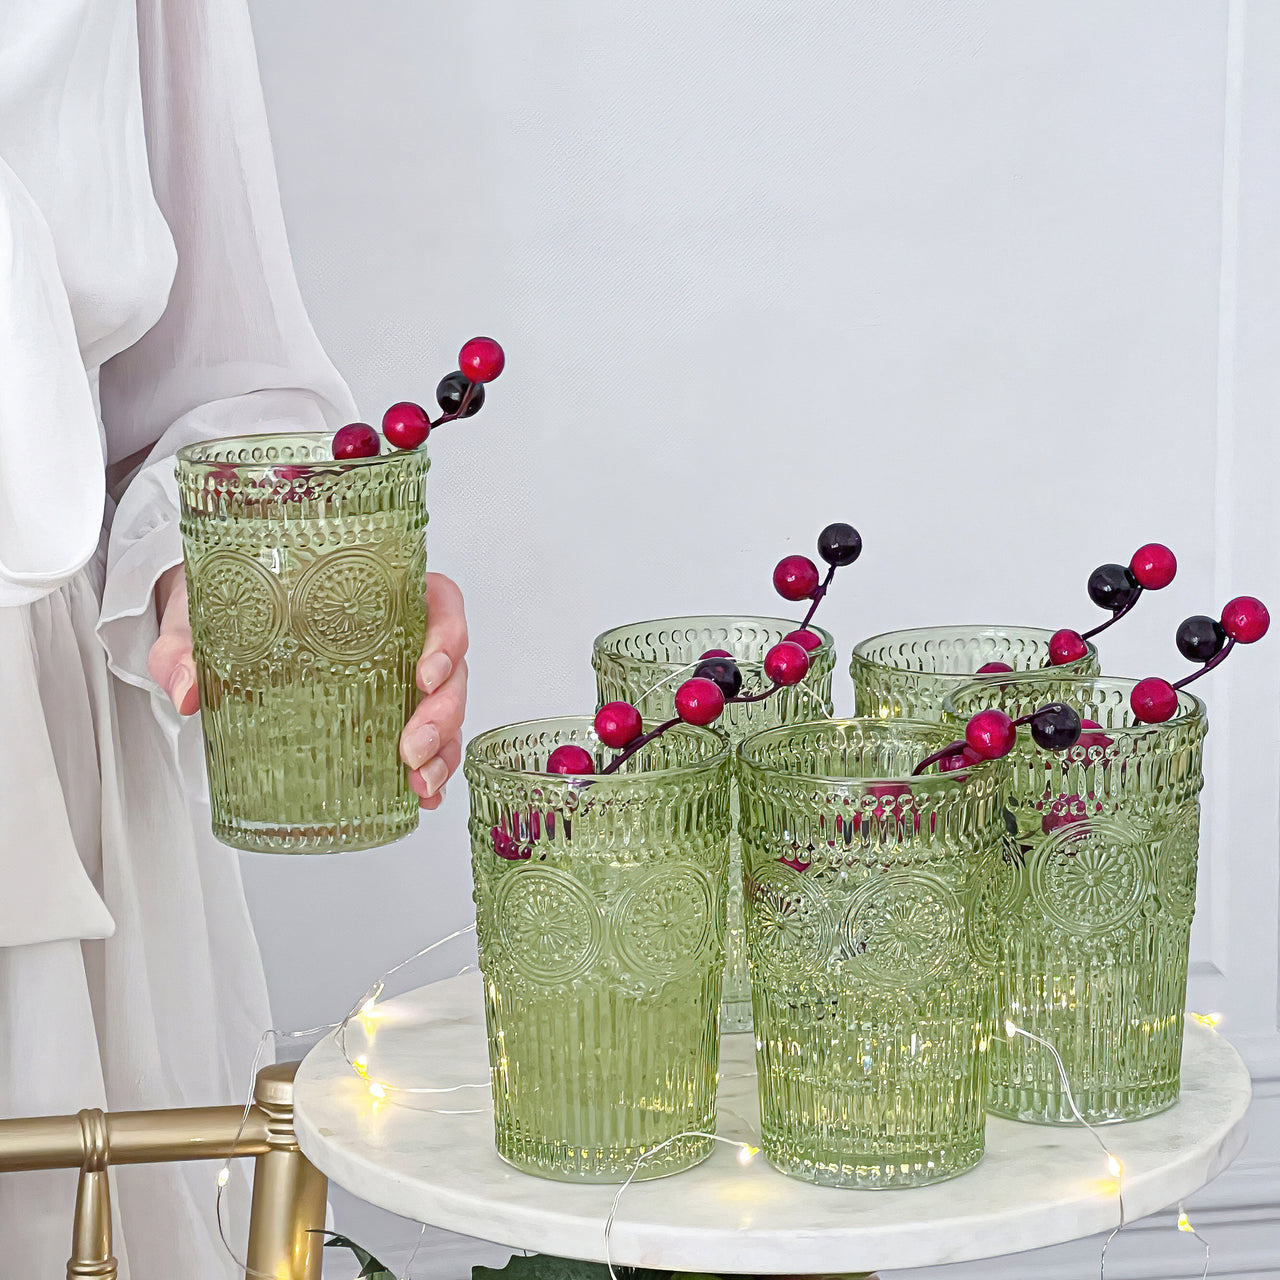 13 oz. Vintage Textured Sage Green Drinking Glasses (Set of 6)